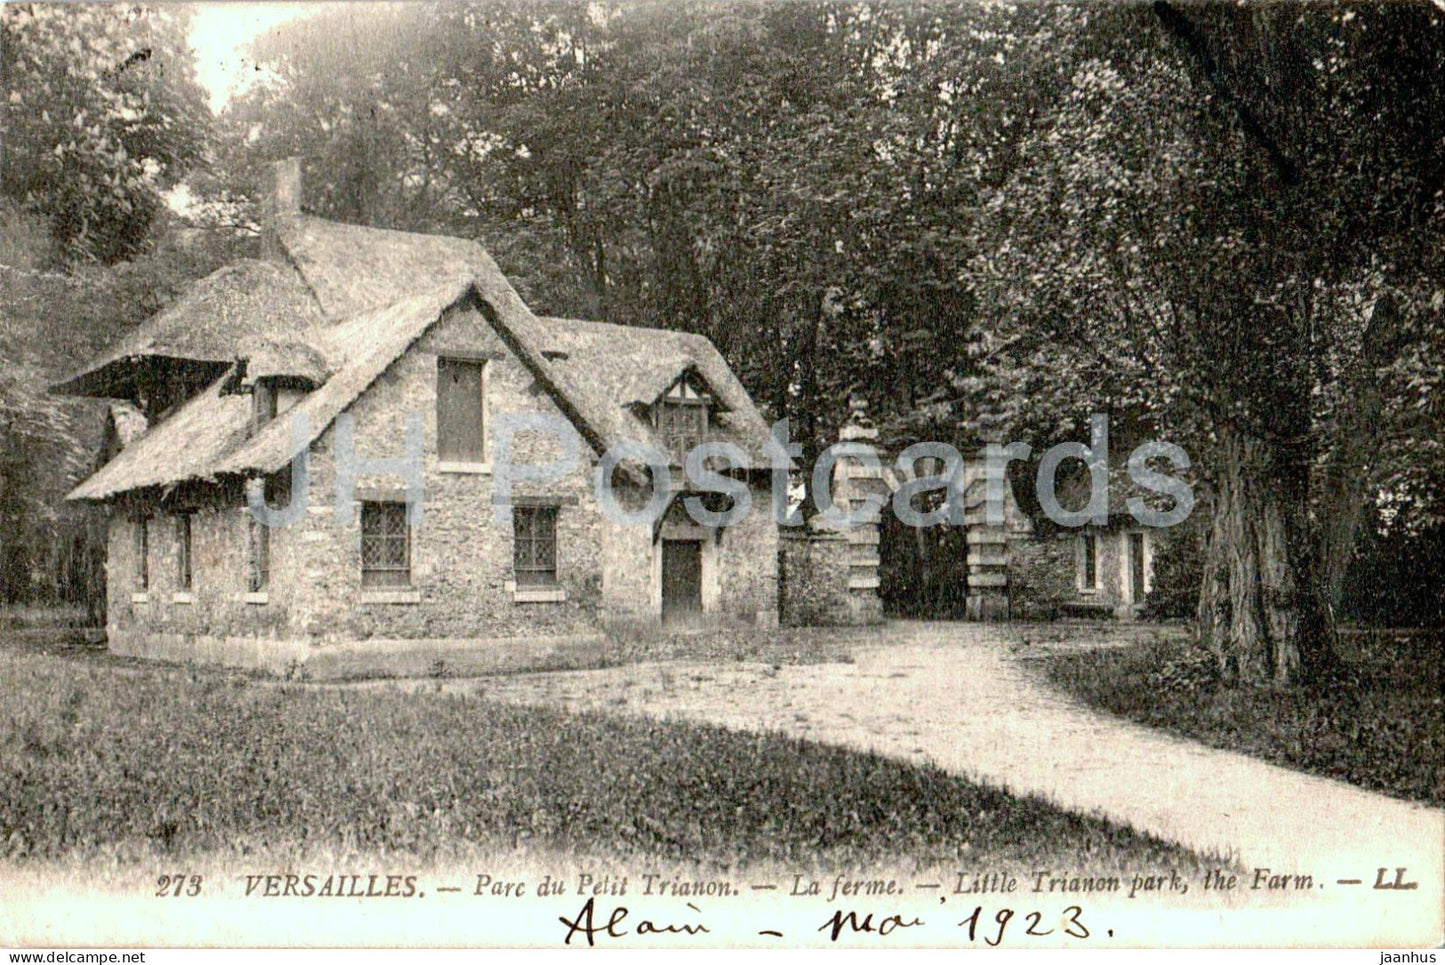 Versailles - Parc du Petit Trianon - La Ferme - The Farm - 273 - old postcard - 1923 - France - used - JH Postcards